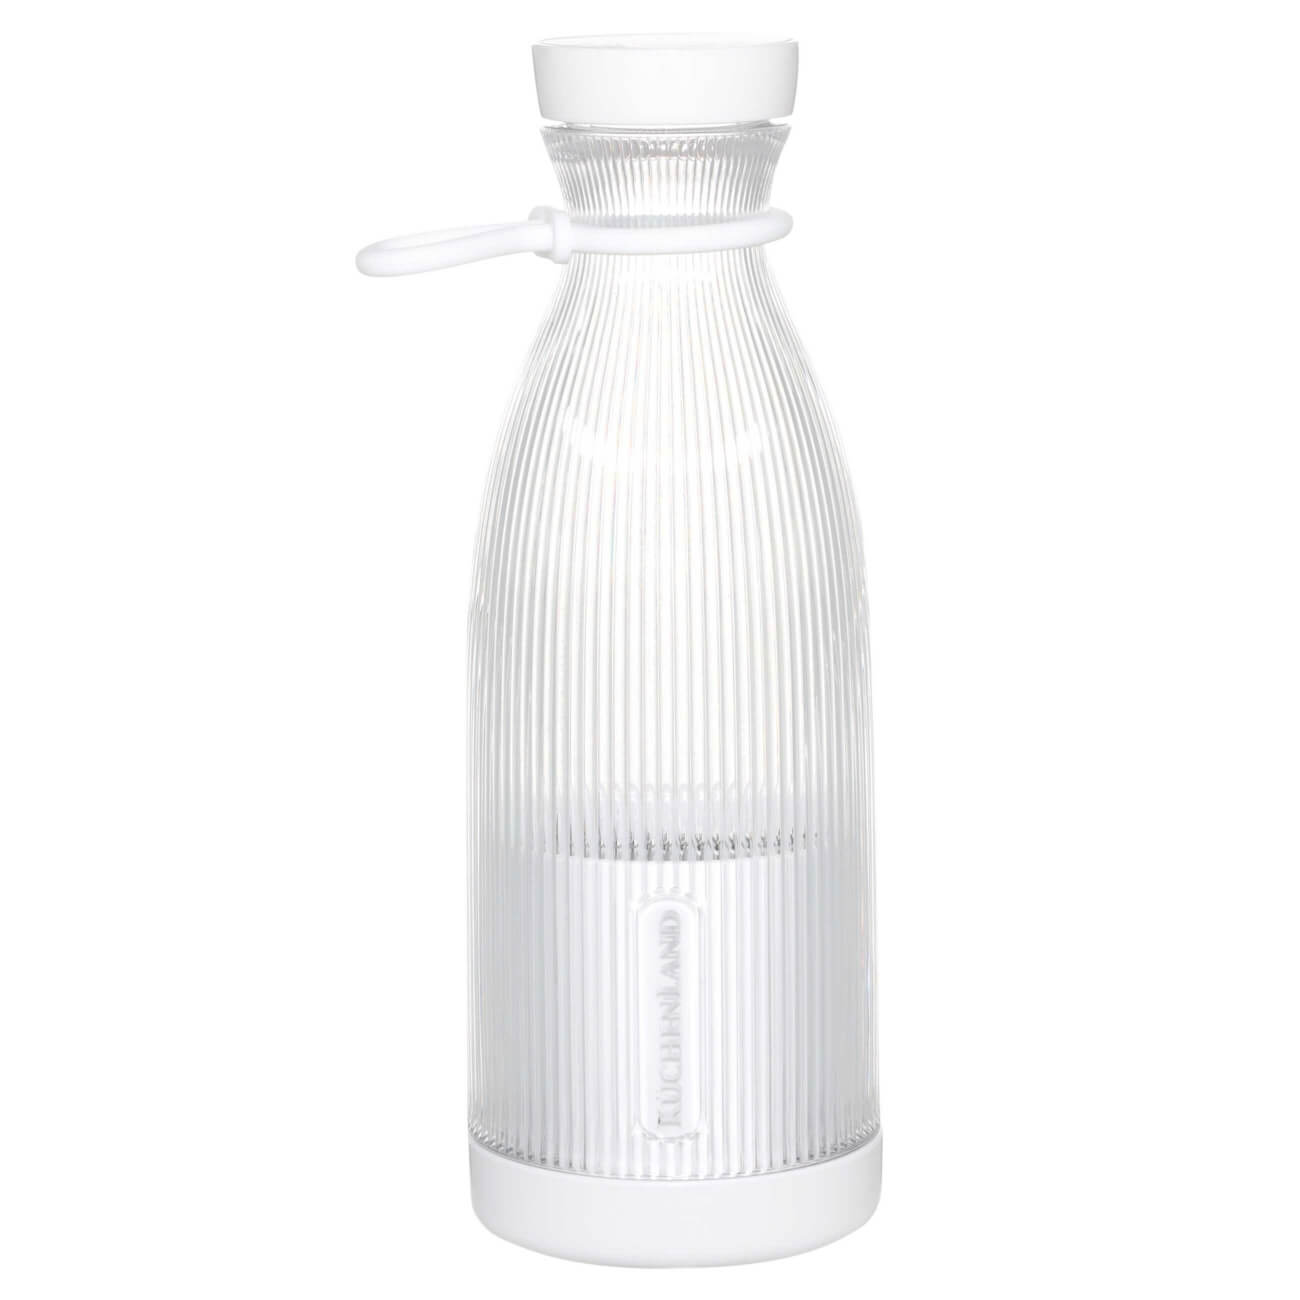 Блендер персональный, 300 мл, портативный, пластик, белый, Бутылка, Ribby папка для тетрадей а5 на молнии пластик трансформеры